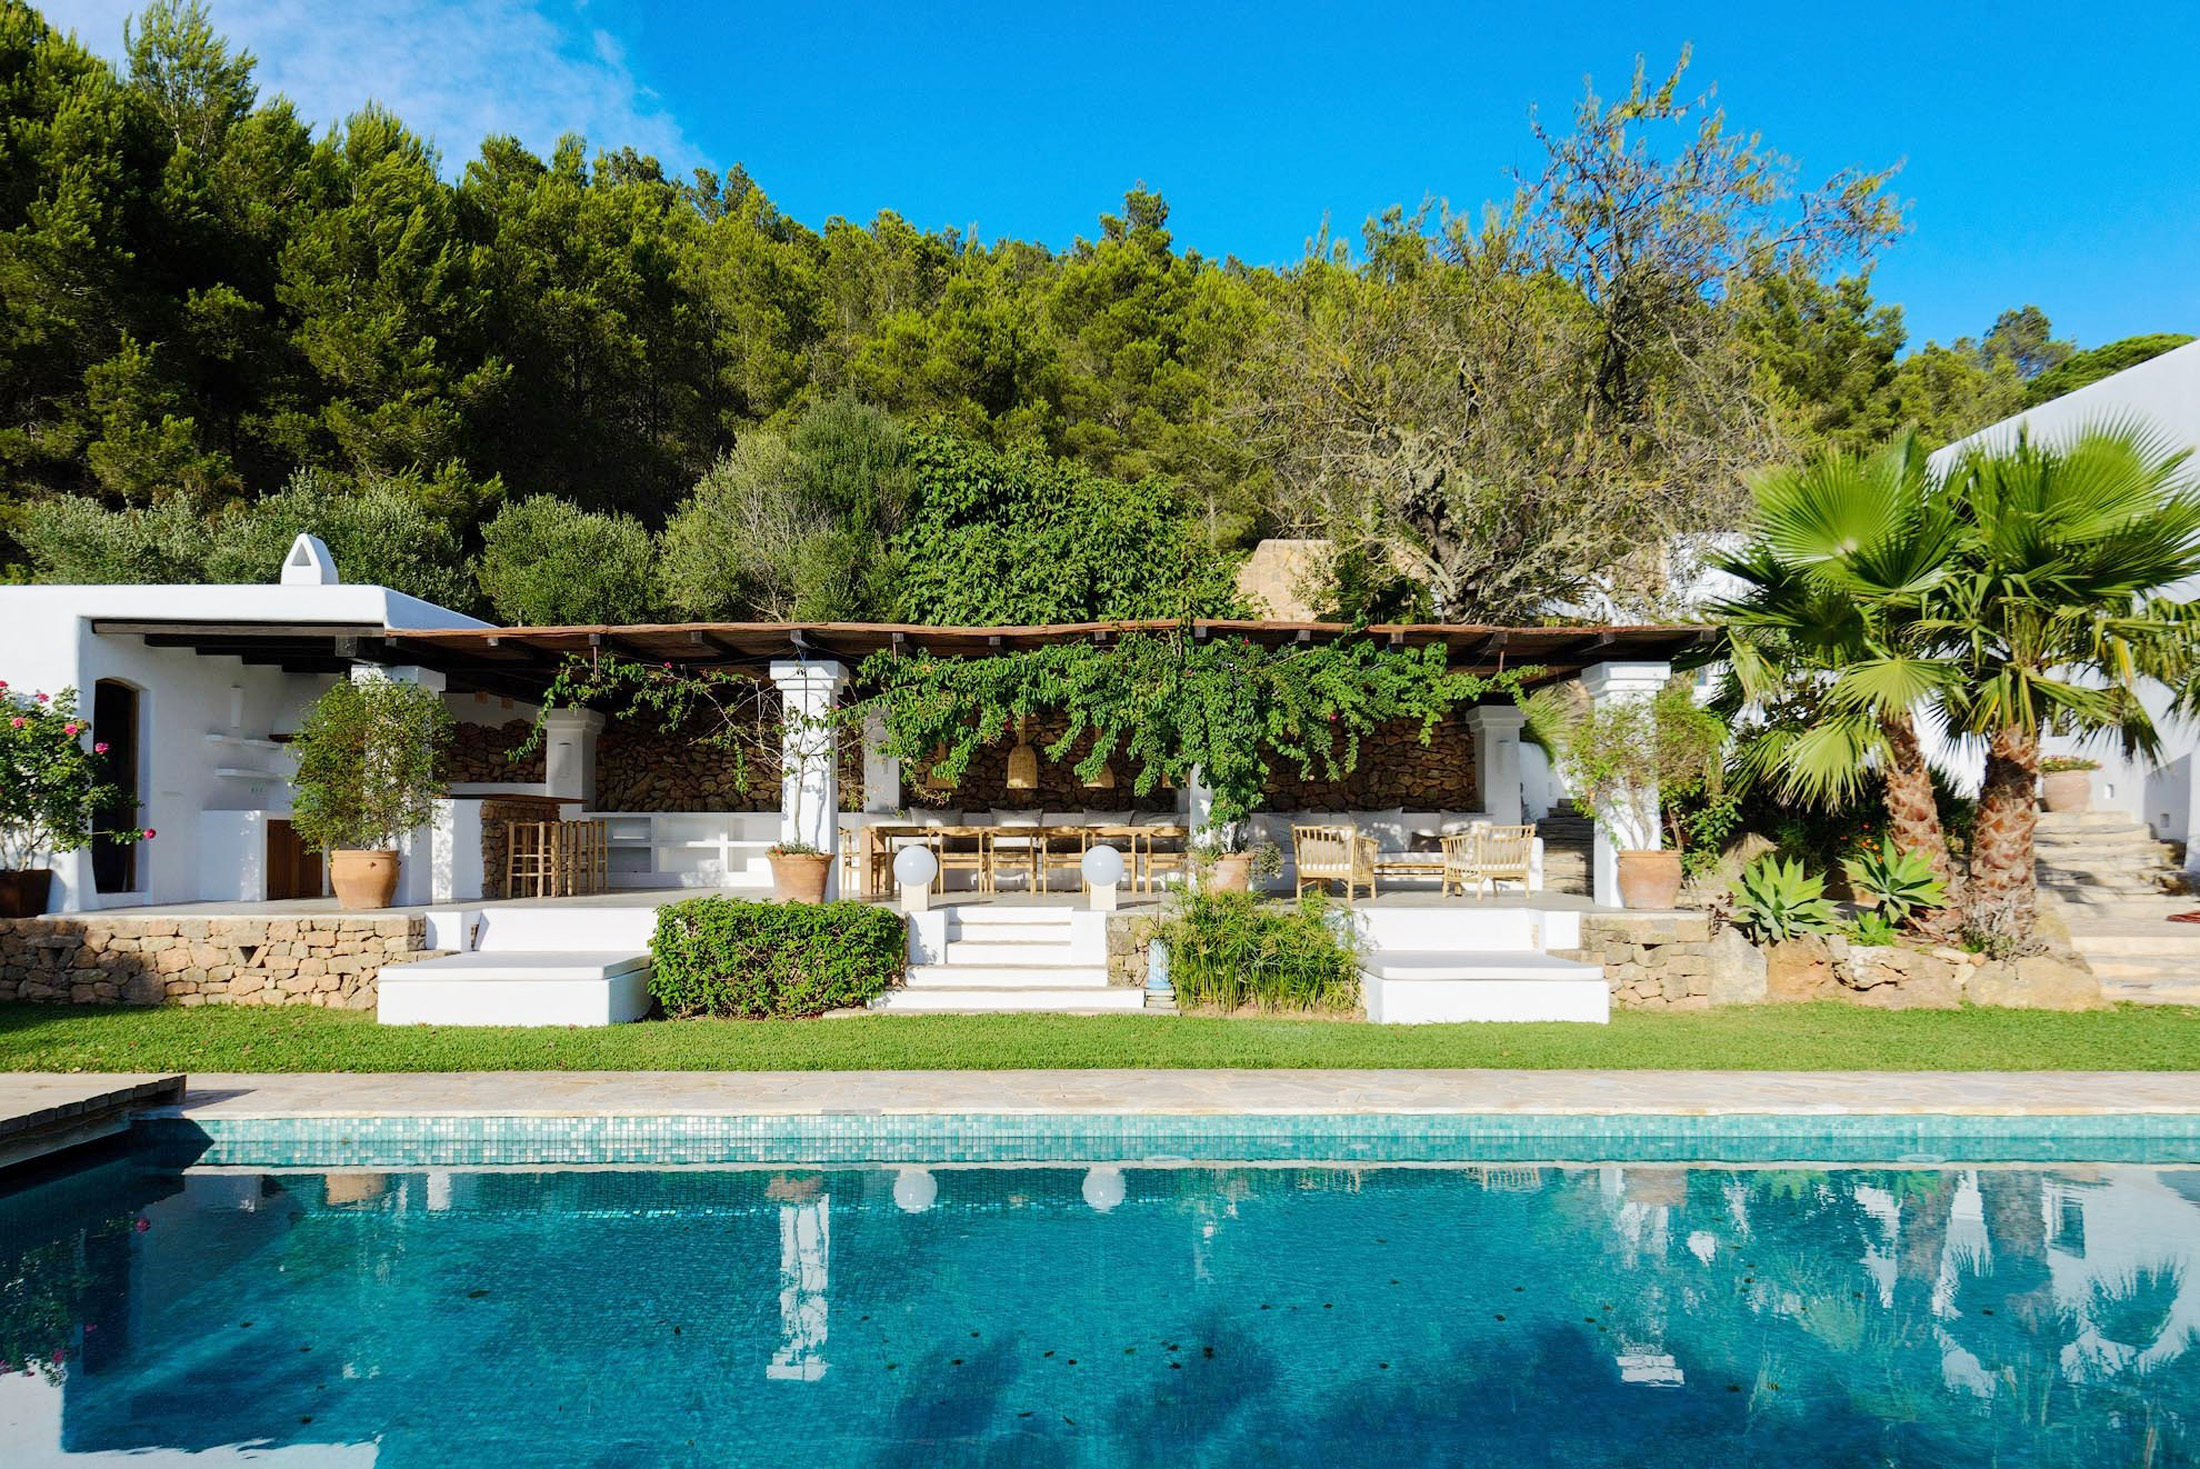 Pool at Villa Mariposa in Ibiza